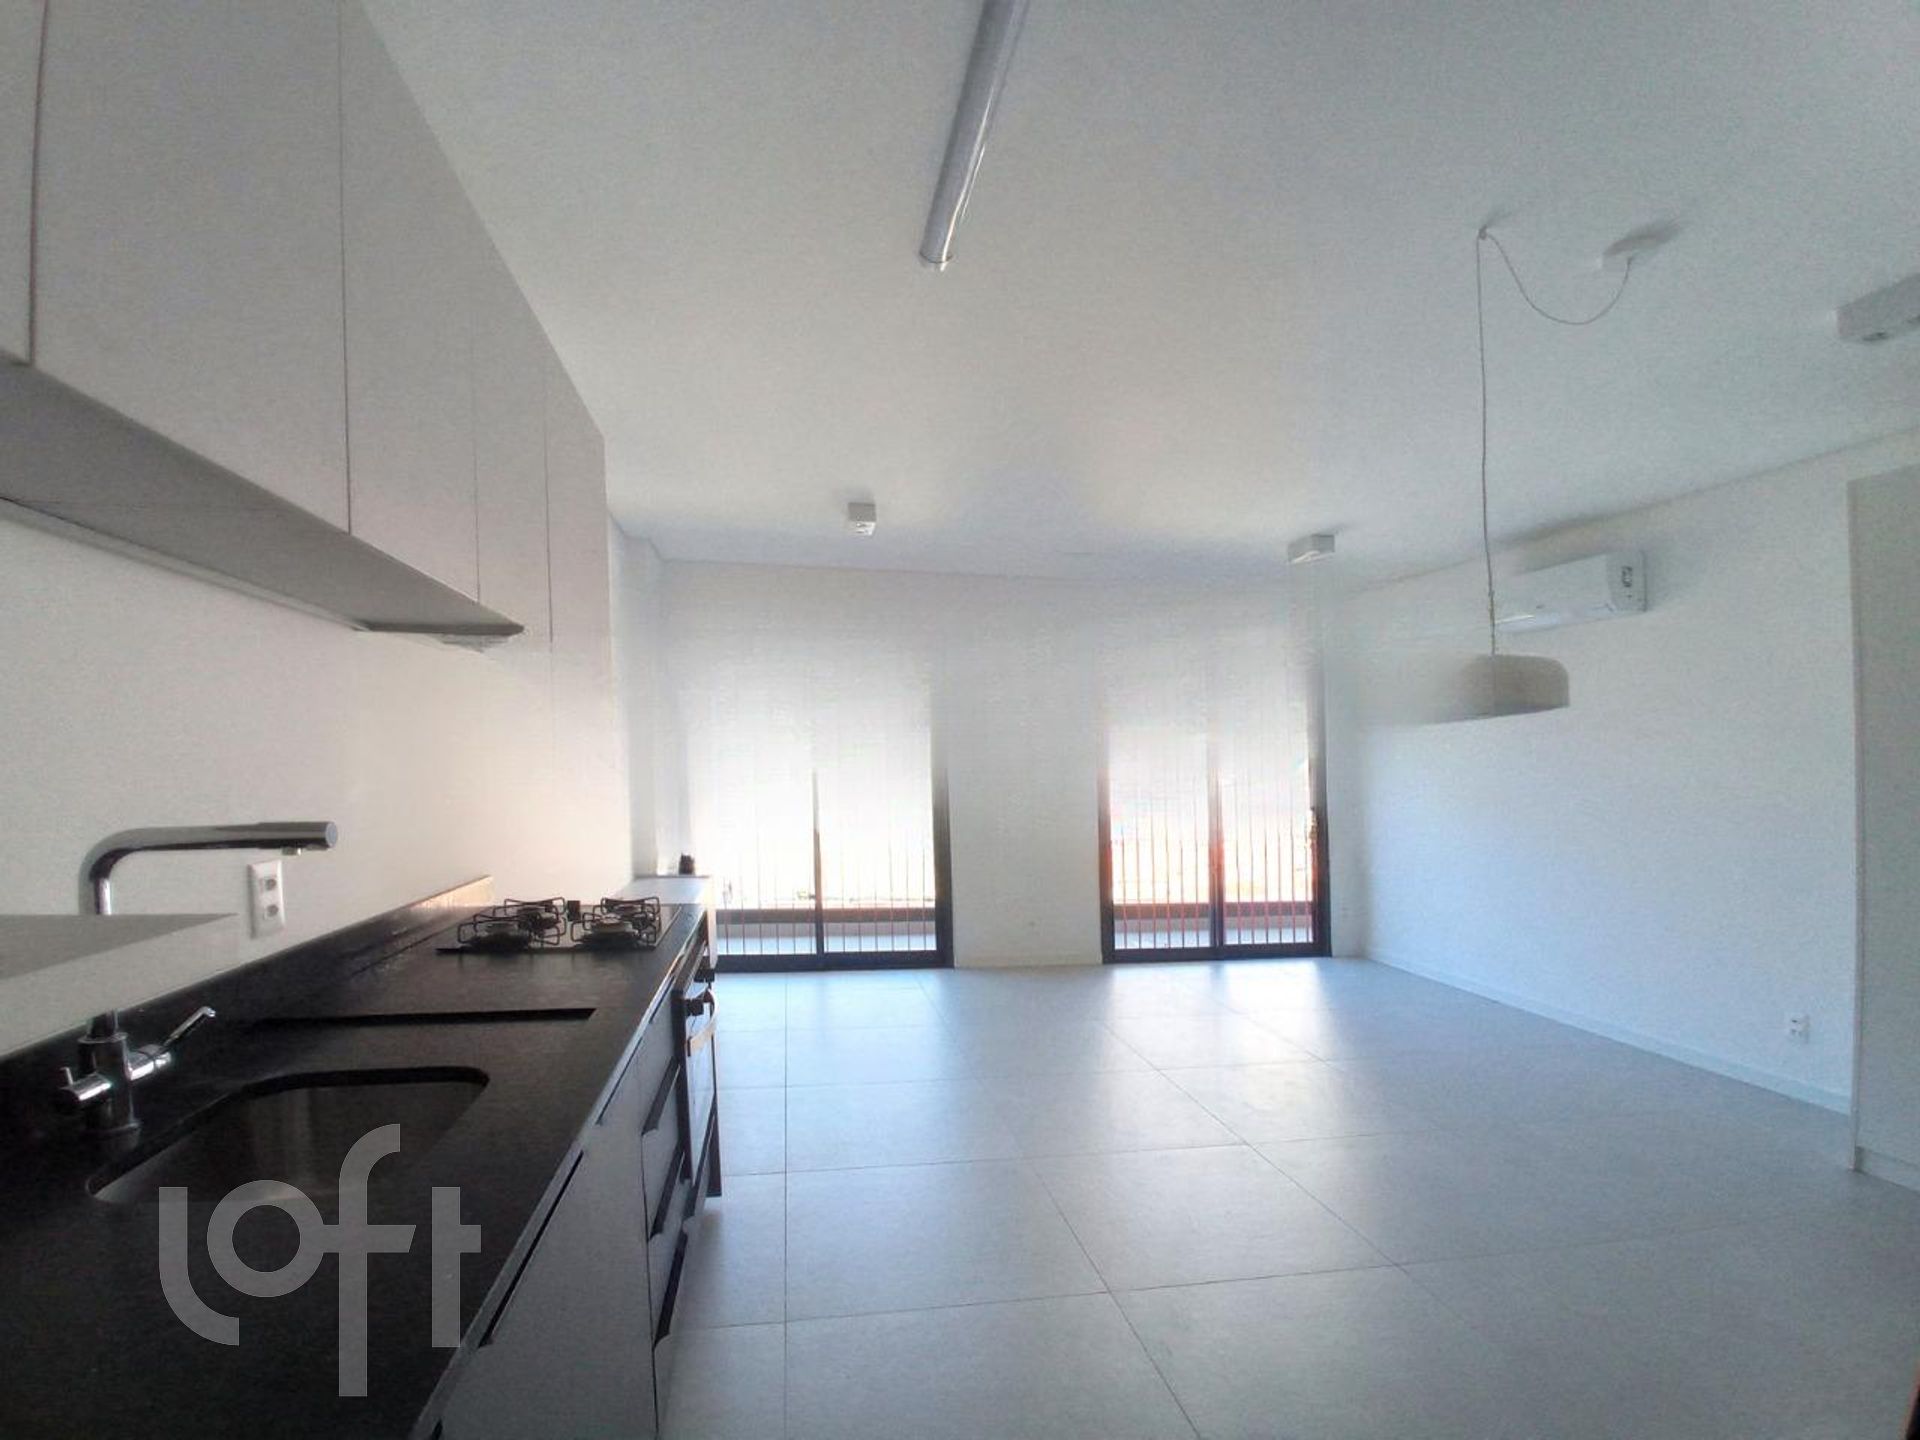 VENDA &#8211; Apartamento de 1 quarto no bairro João Paulo, Florianópolis &#8211; PU66qhfr